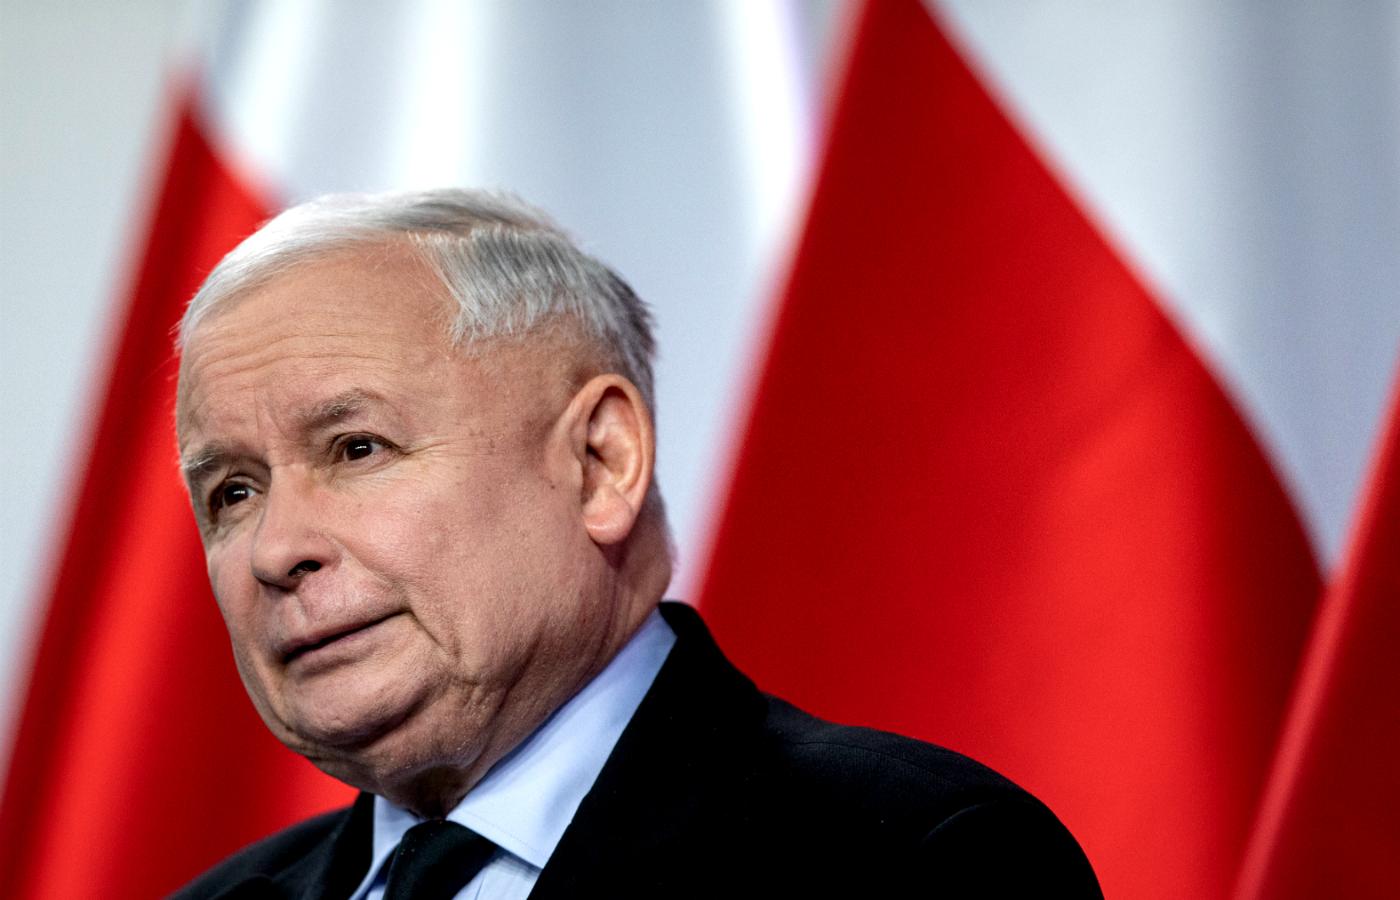 Emerytura, dieta i trochę oszczędności. Jak wygląda oświadczenie majątkowe prezesa Kaczyńskiego? - Zdjęcie główne